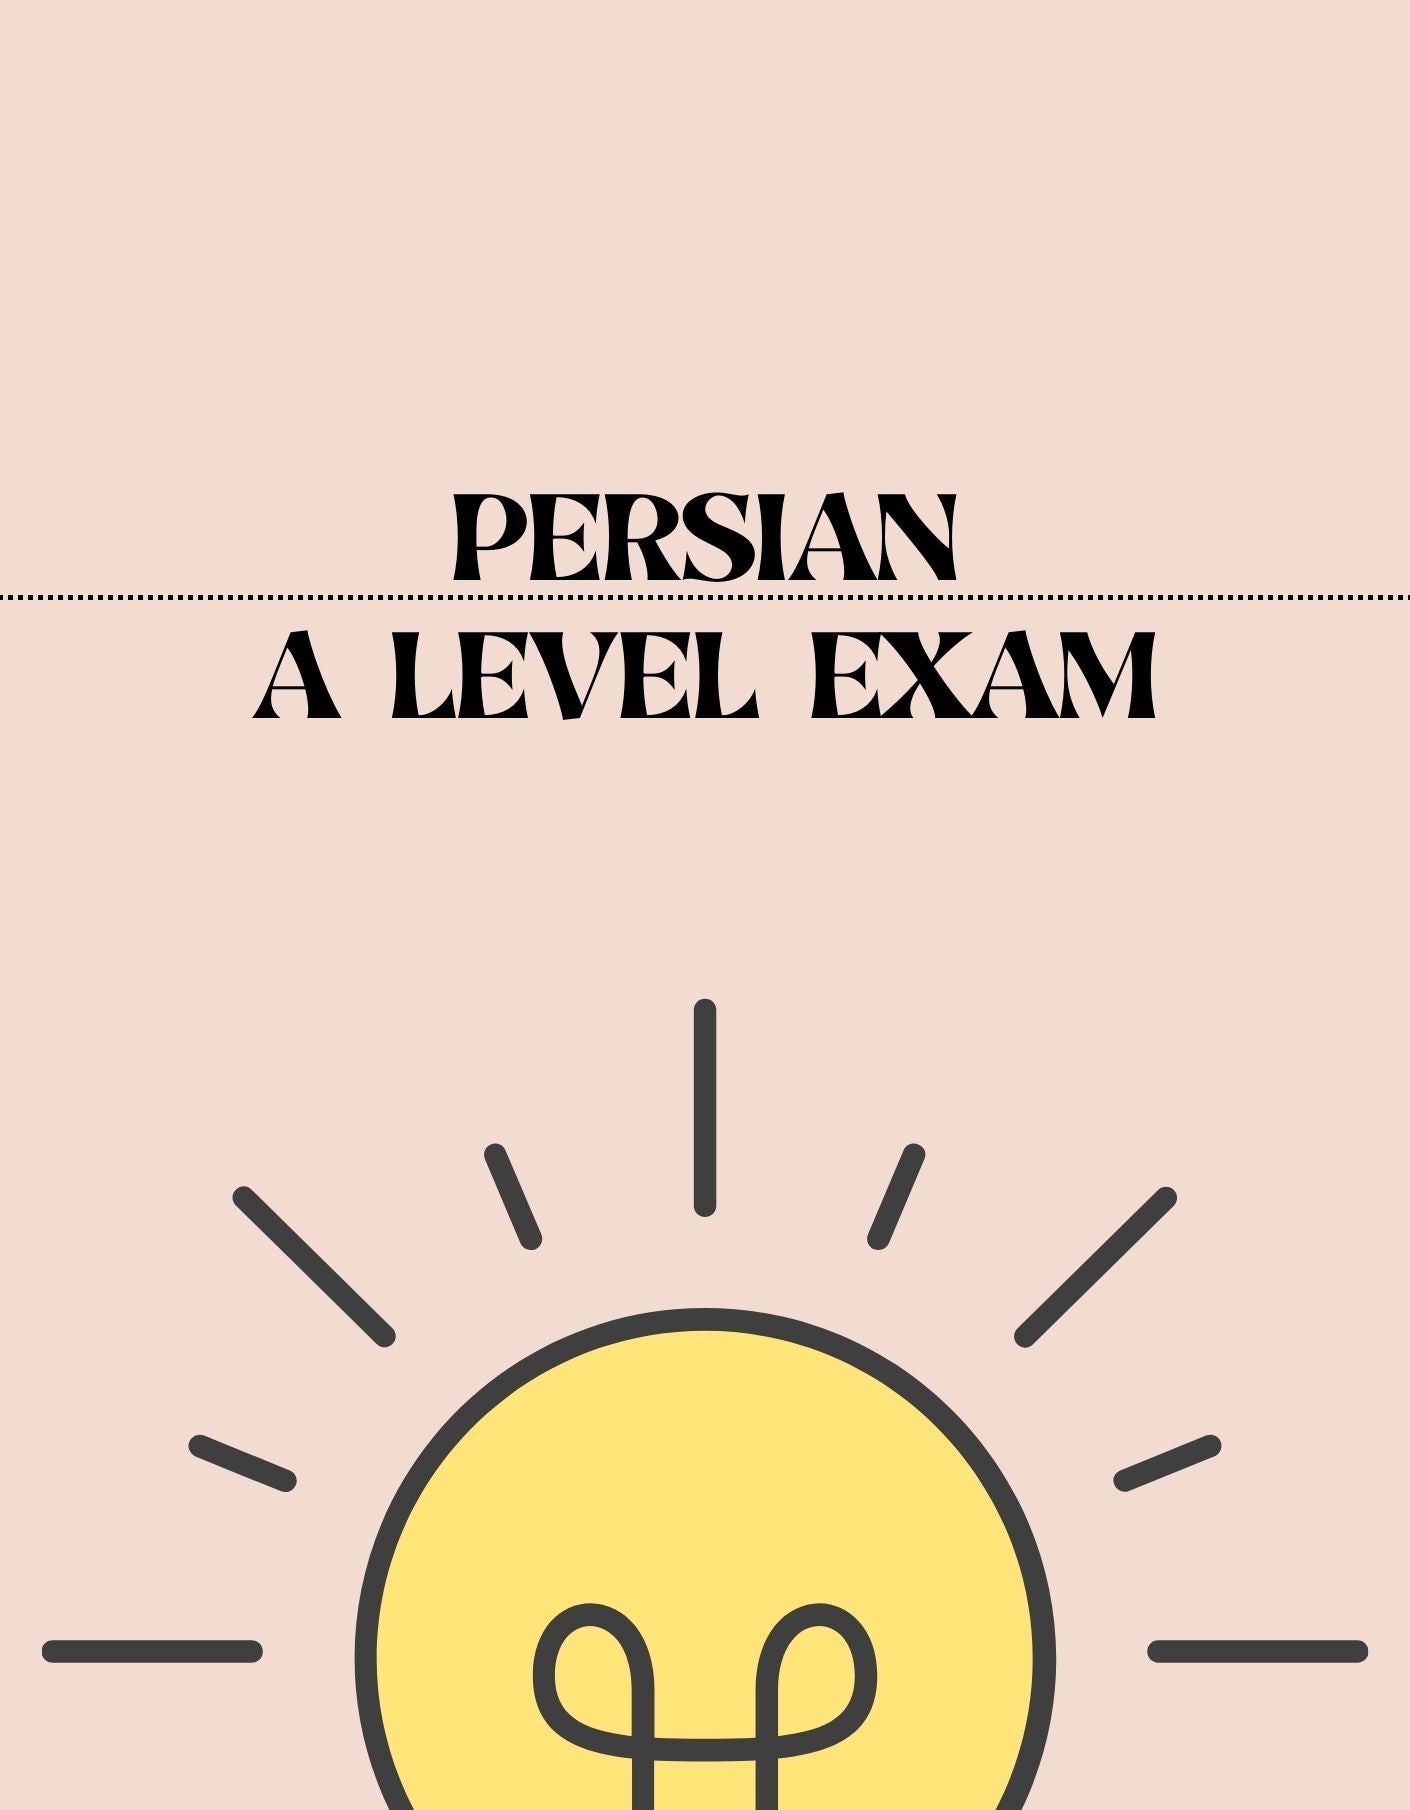 A Level - Persian Exam - Exam Centre Birmingham Limited